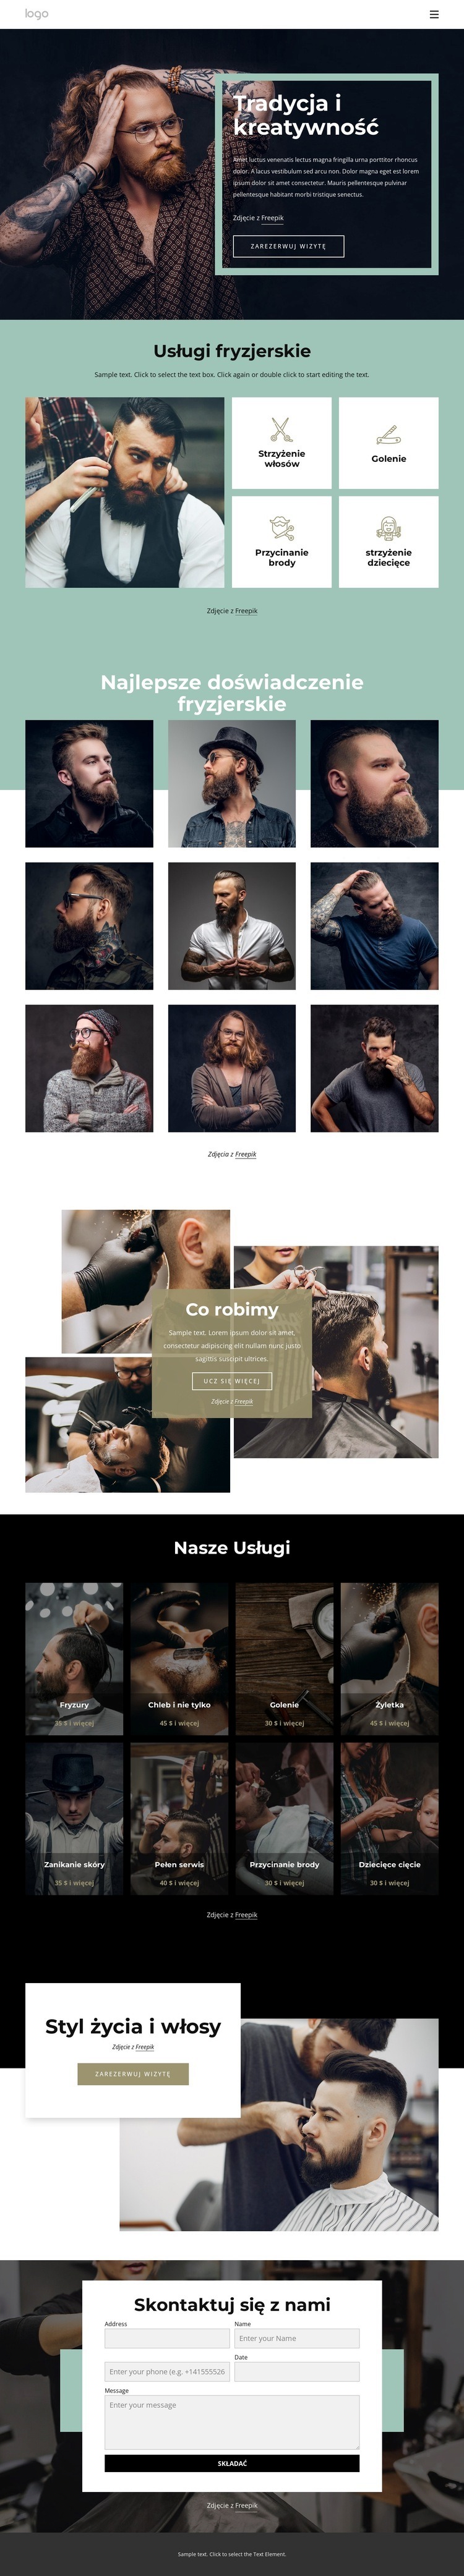 Ogólnodostępny salon fryzjerski Projekt strony internetowej